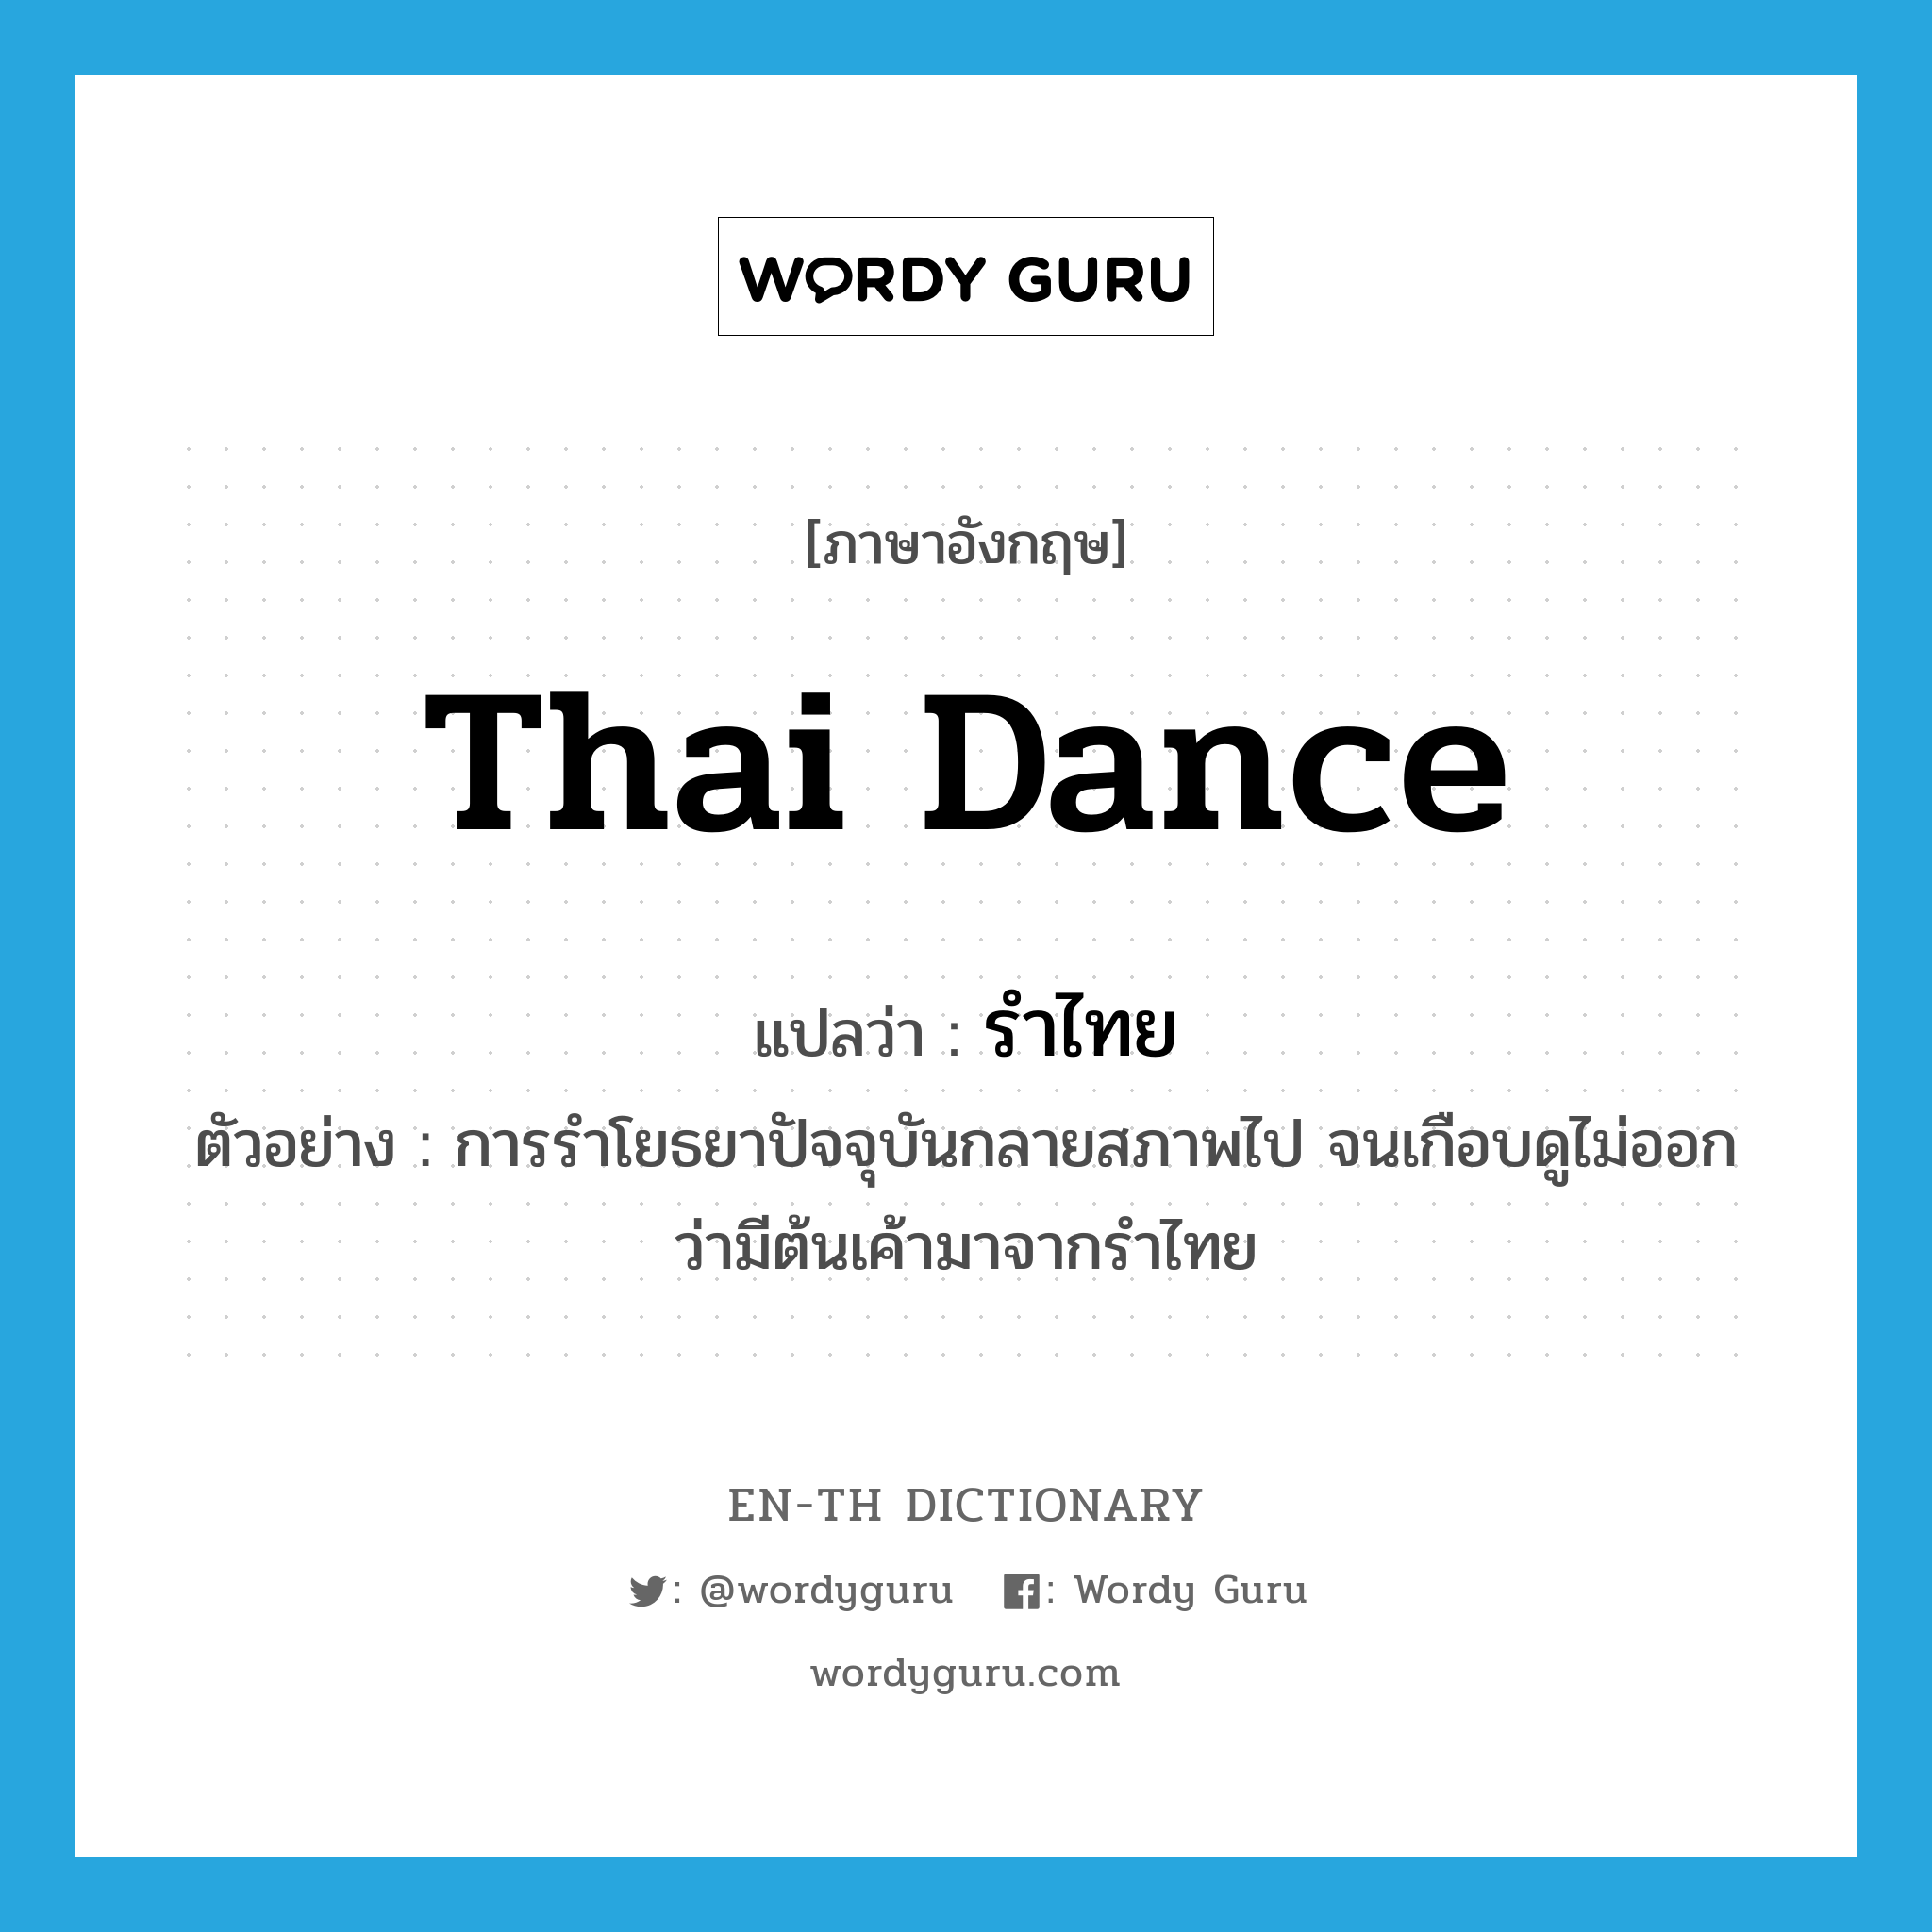 Thai dance แปลว่า?, คำศัพท์ภาษาอังกฤษ Thai dance แปลว่า รำไทย ประเภท N ตัวอย่าง การรำโยธยาปัจจุบันกลายสภาพไป จนเกือบดูไม่ออกว่ามีต้นเค้ามาจากรำไทย หมวด N